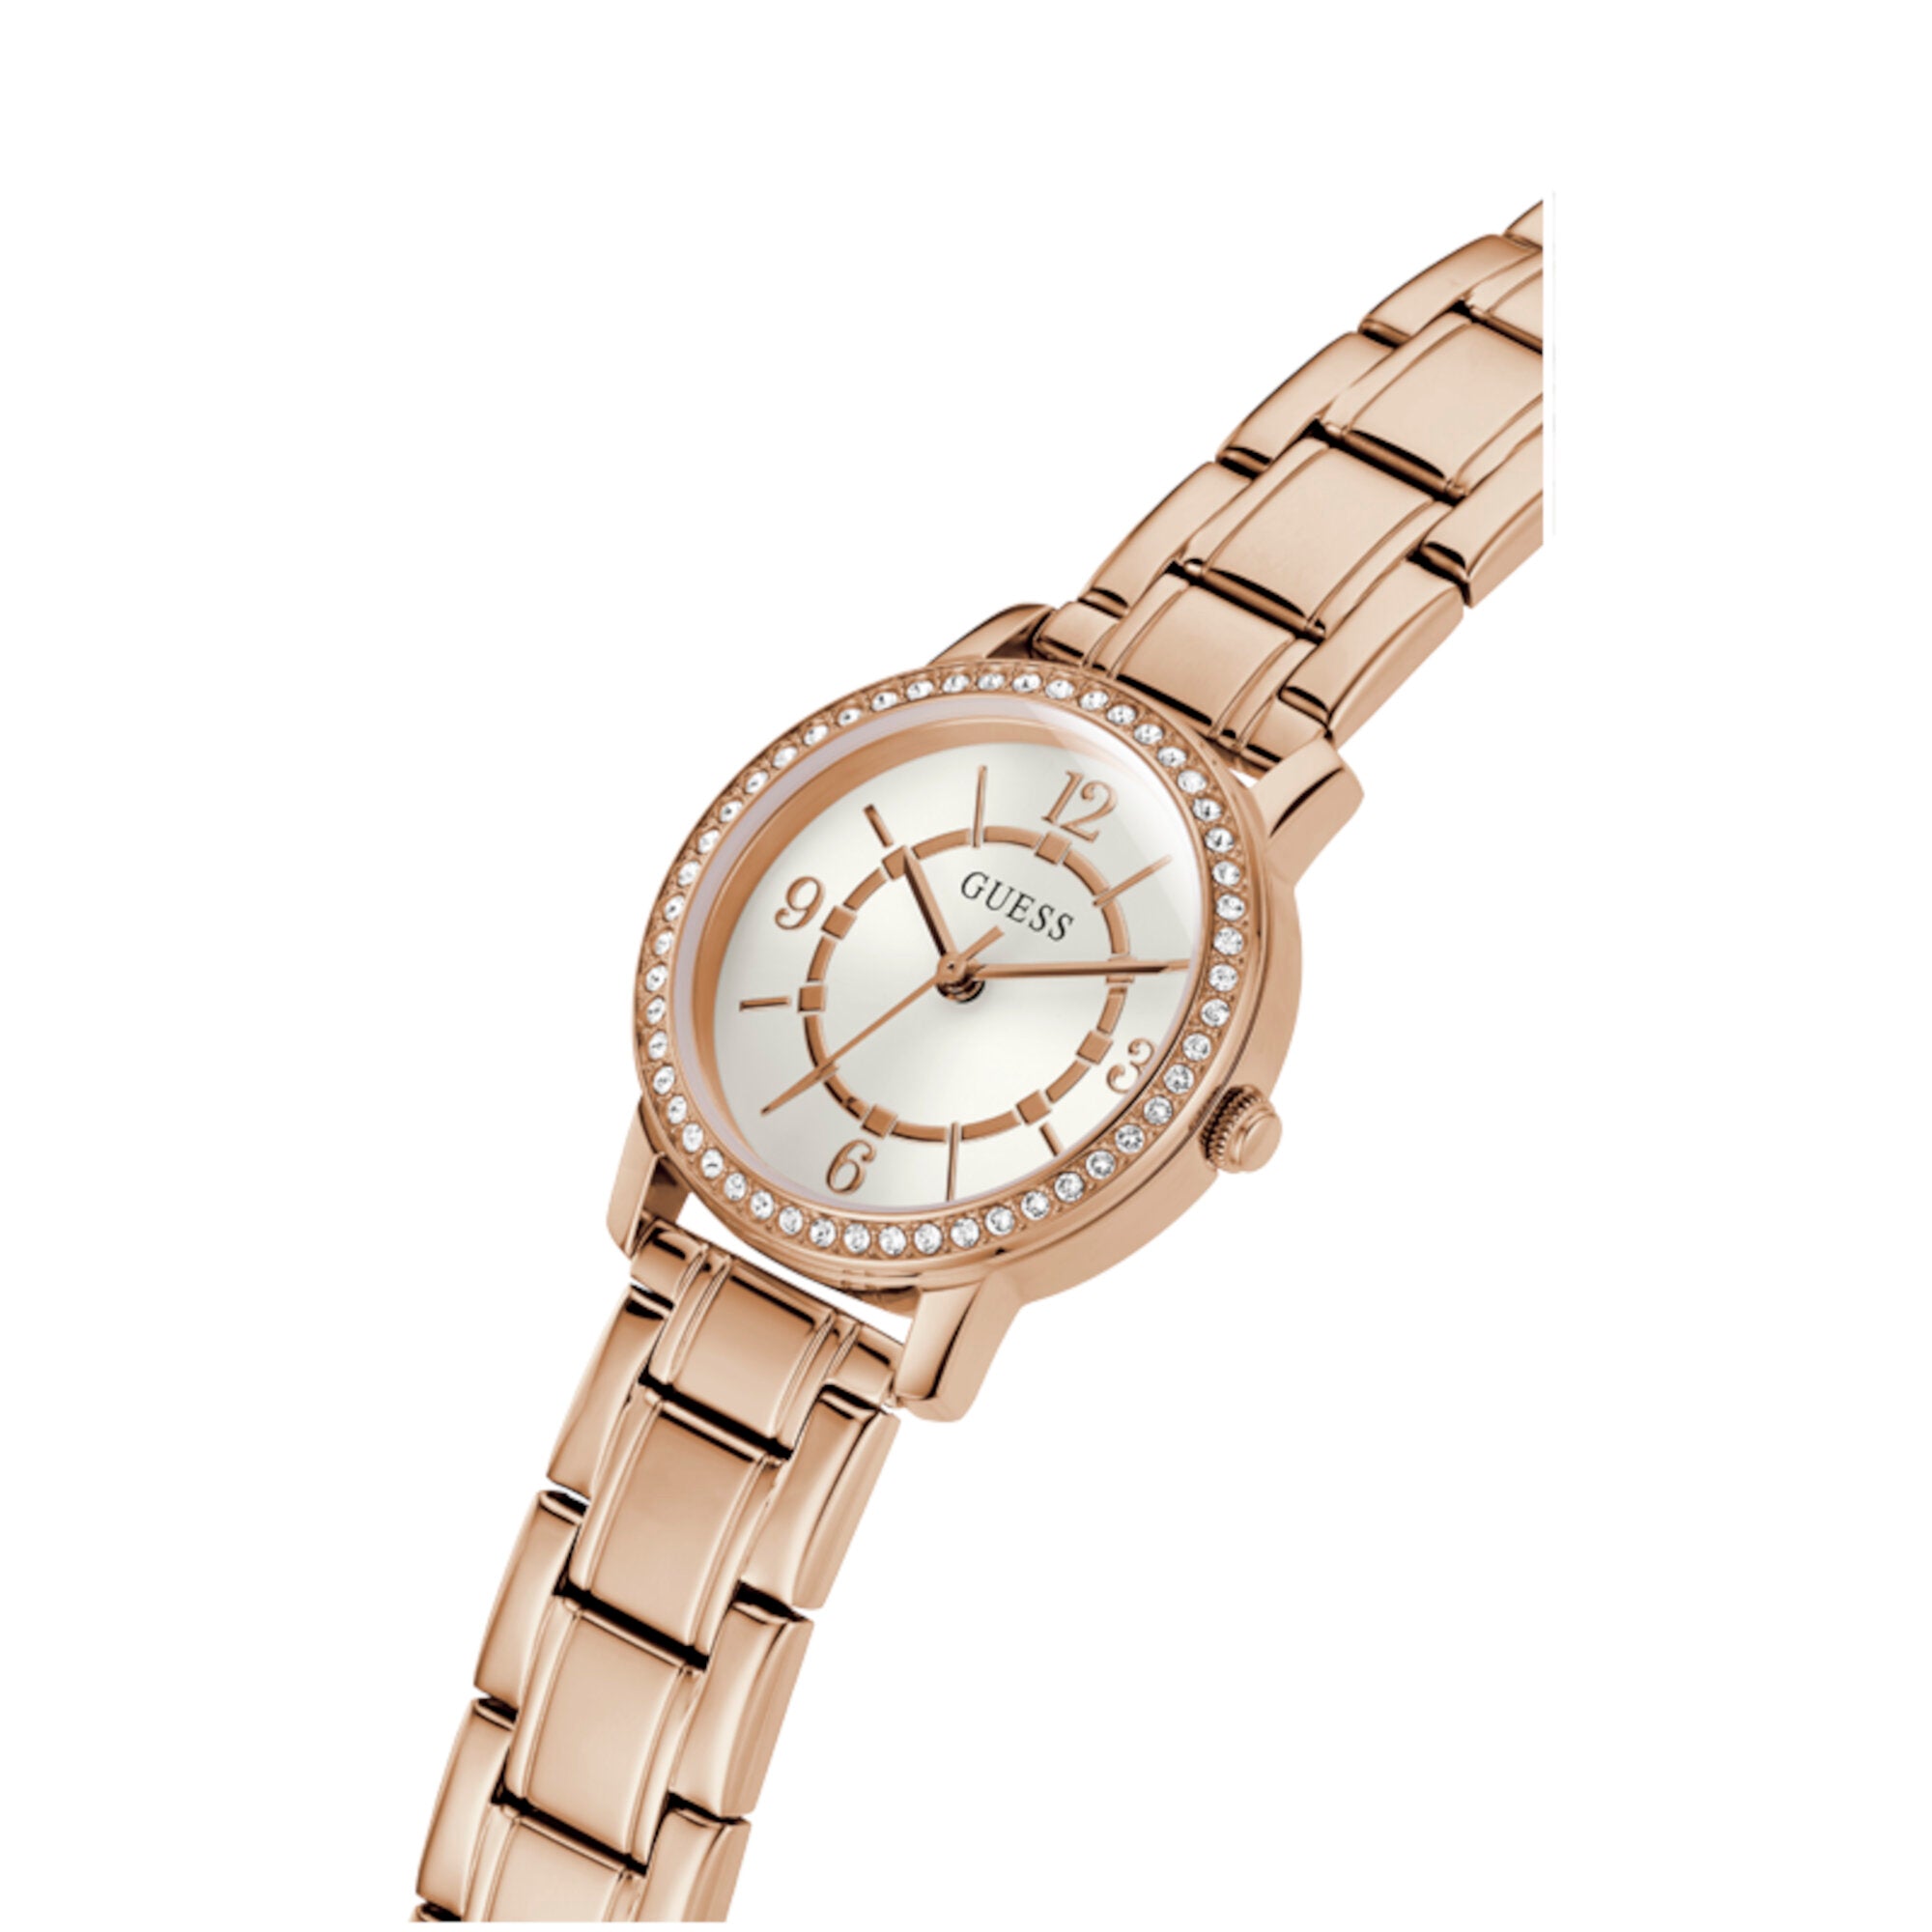 Reloj Guess de mujer Melody color oro rosa